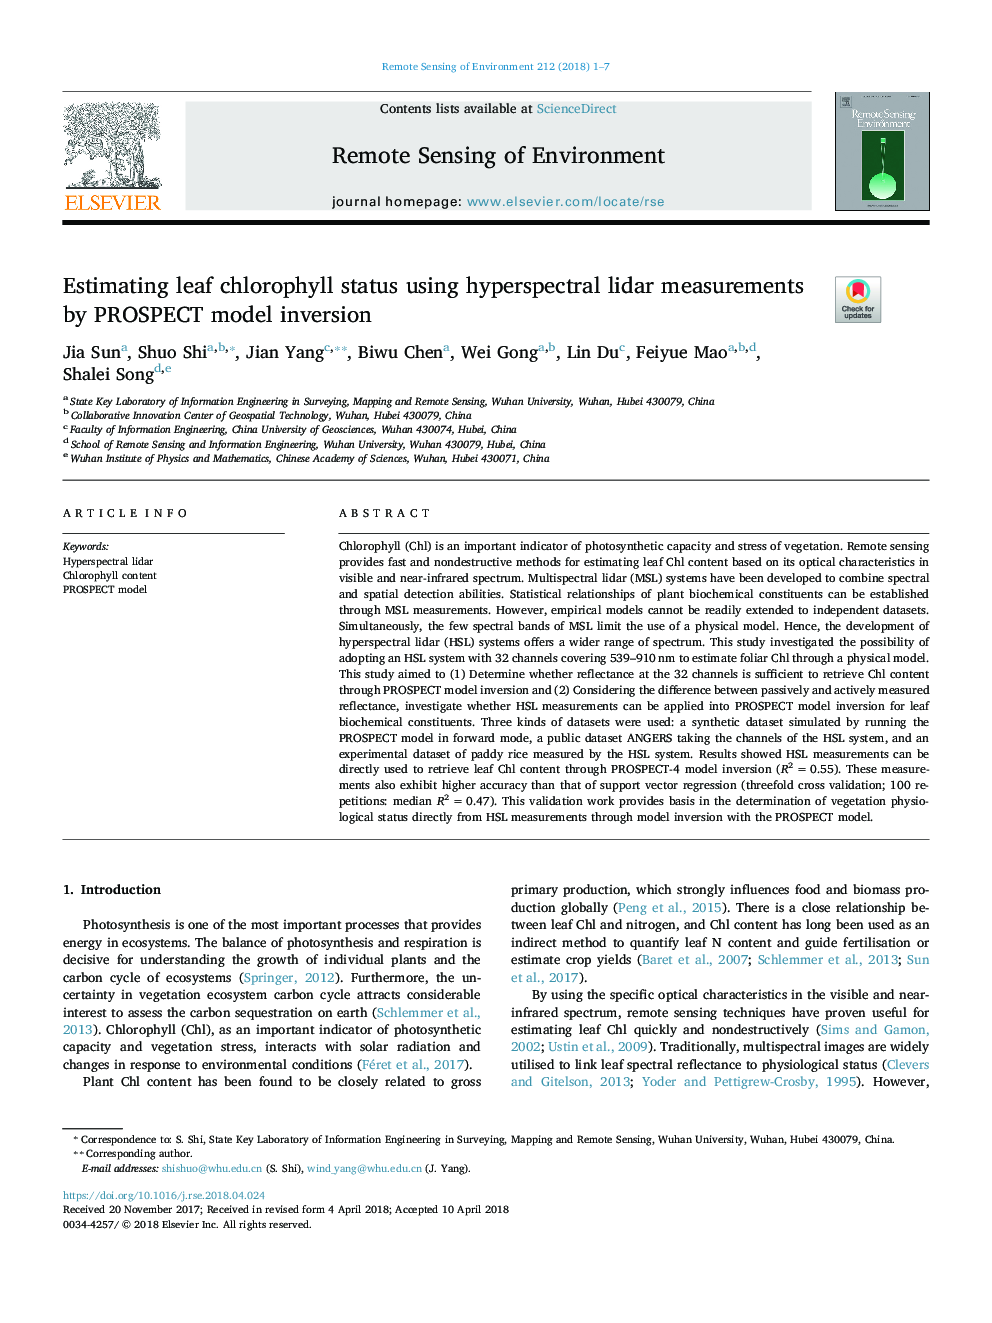 Estimating leaf chlorophyll status using hyperspectral lidar measurements by PROSPECT model inversion